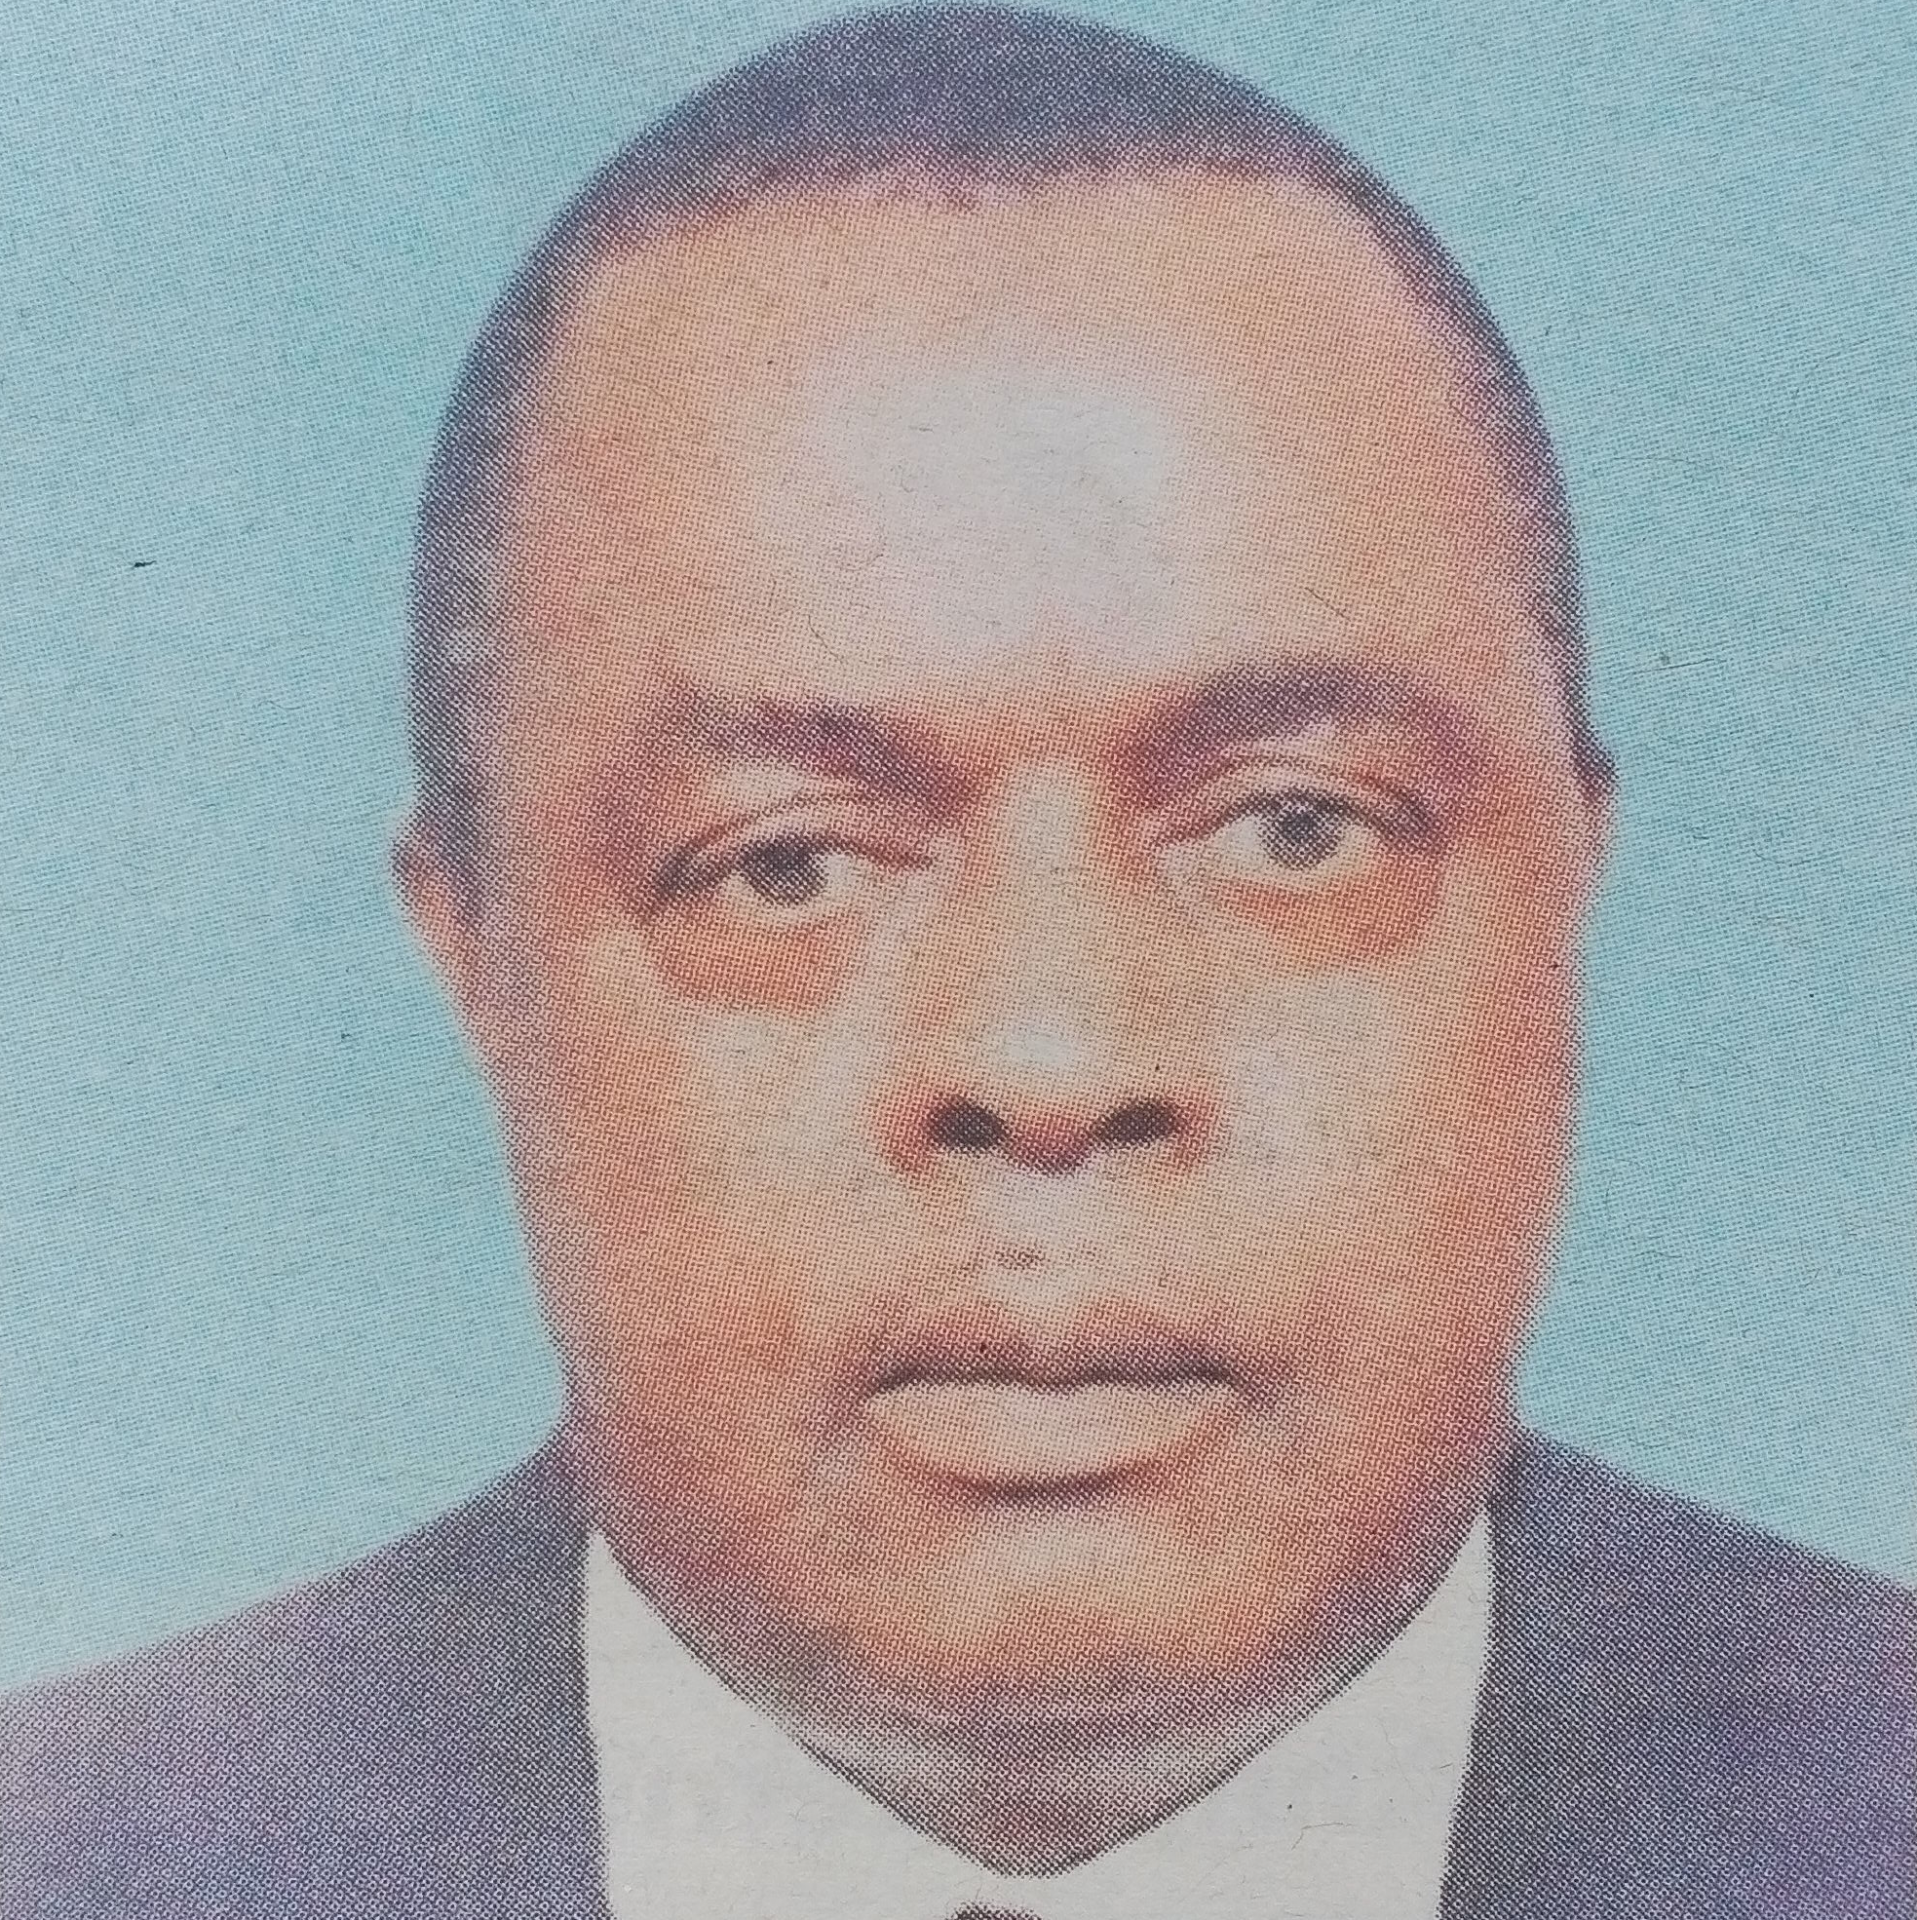 Obituary Image of Michael Muindi Mbuve